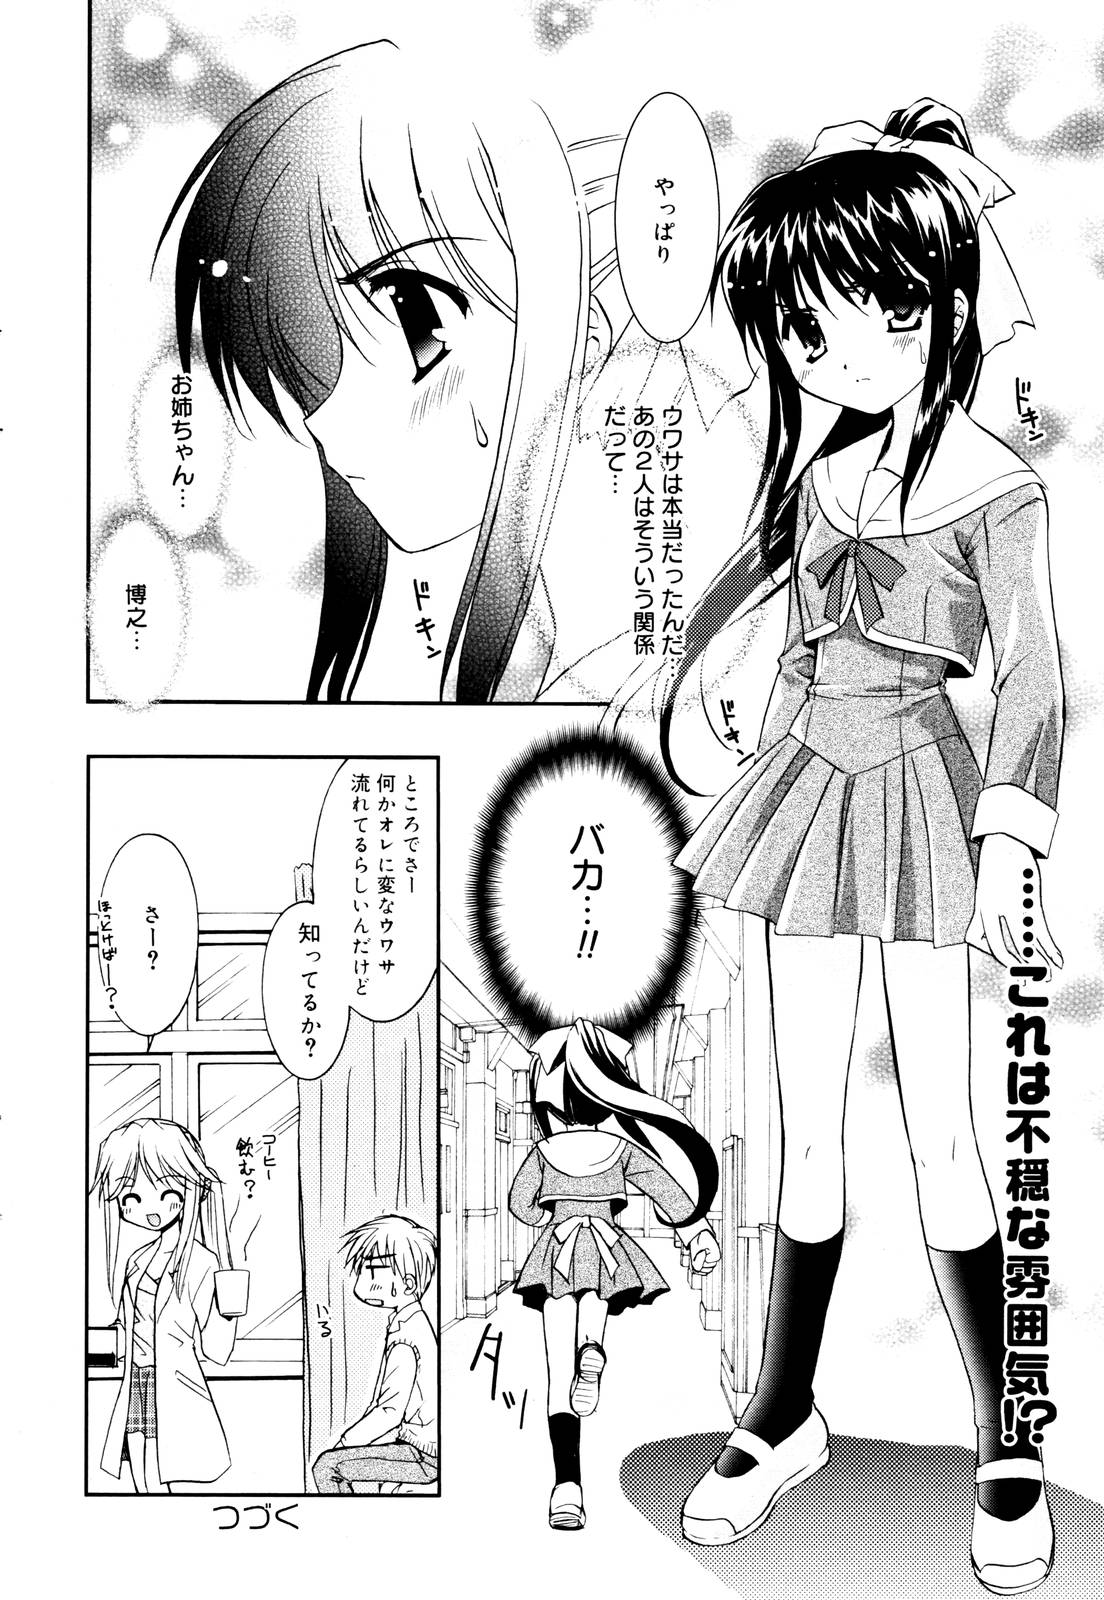 Manga Bangaichi 2006-01 page 38 full